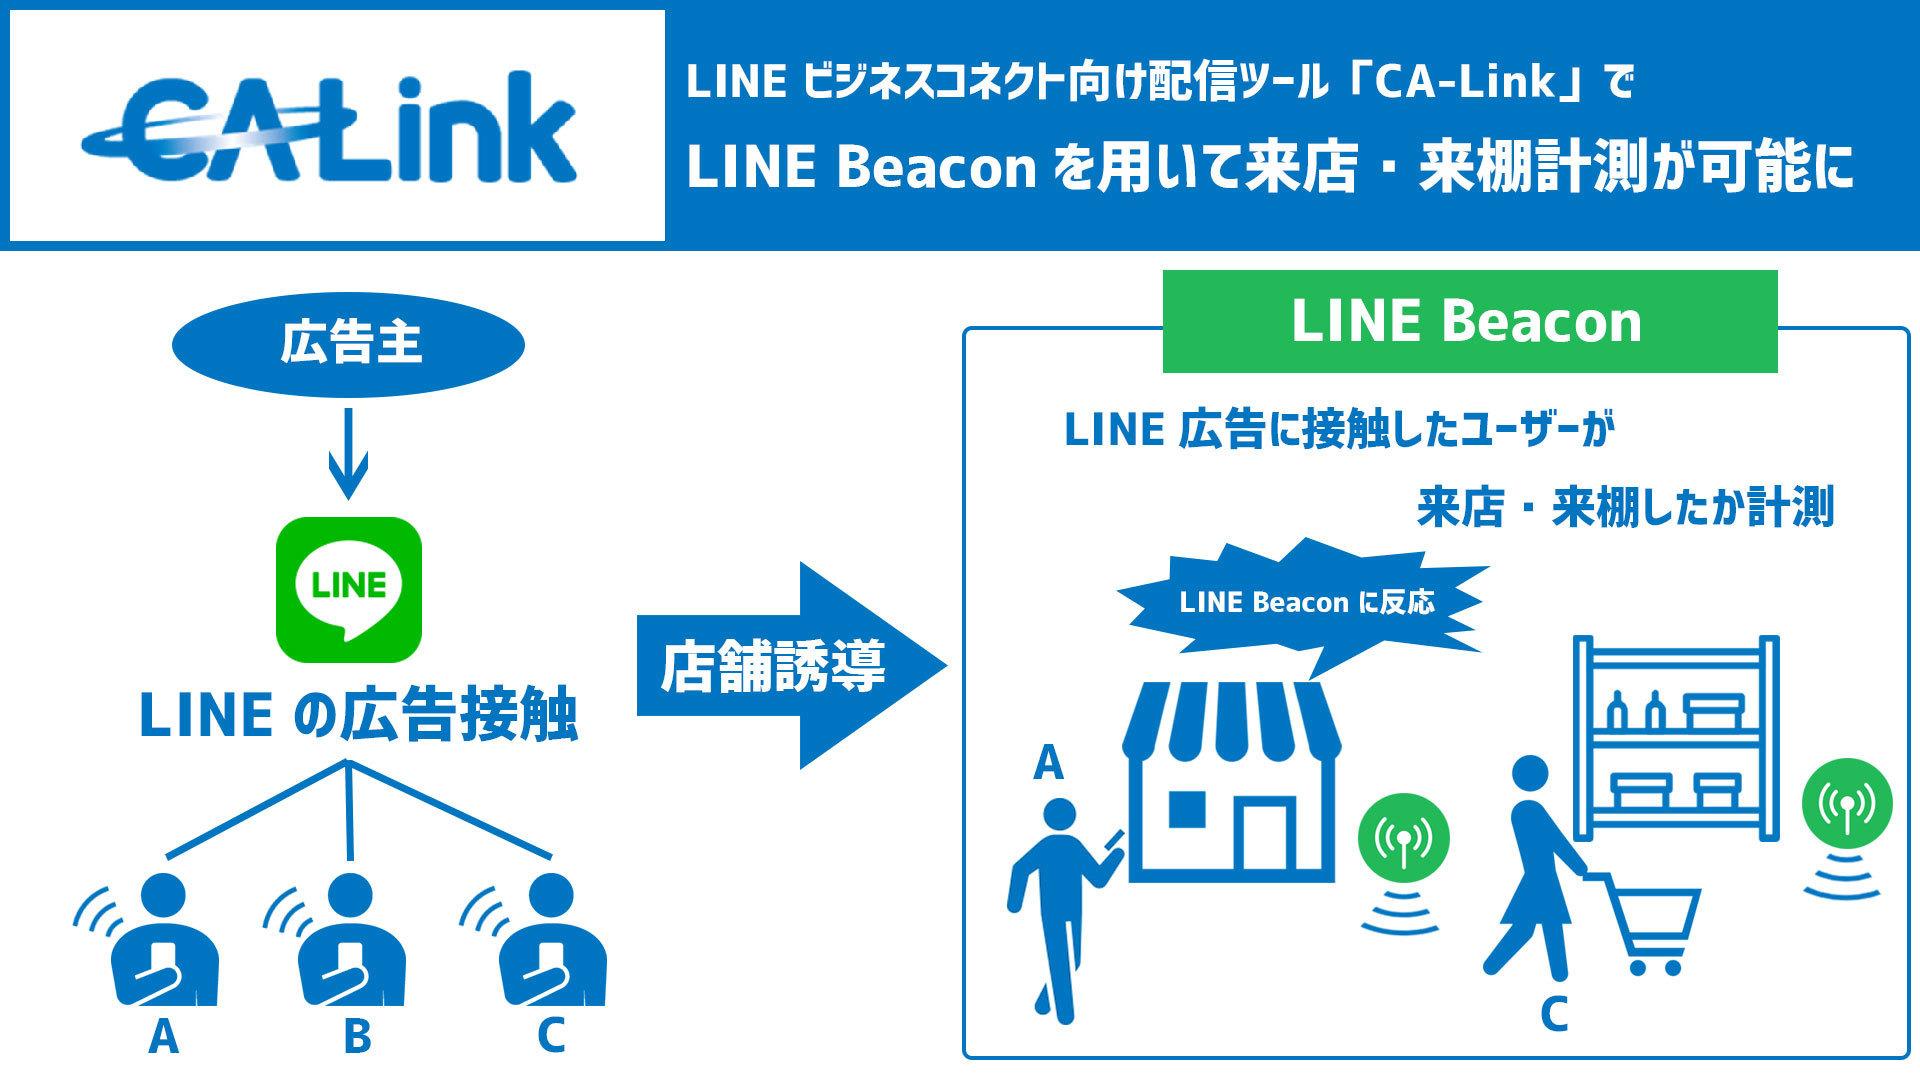 サイバーエージェントの「CA-Link」、LINE配信における店舗誘導効果の計測に対応